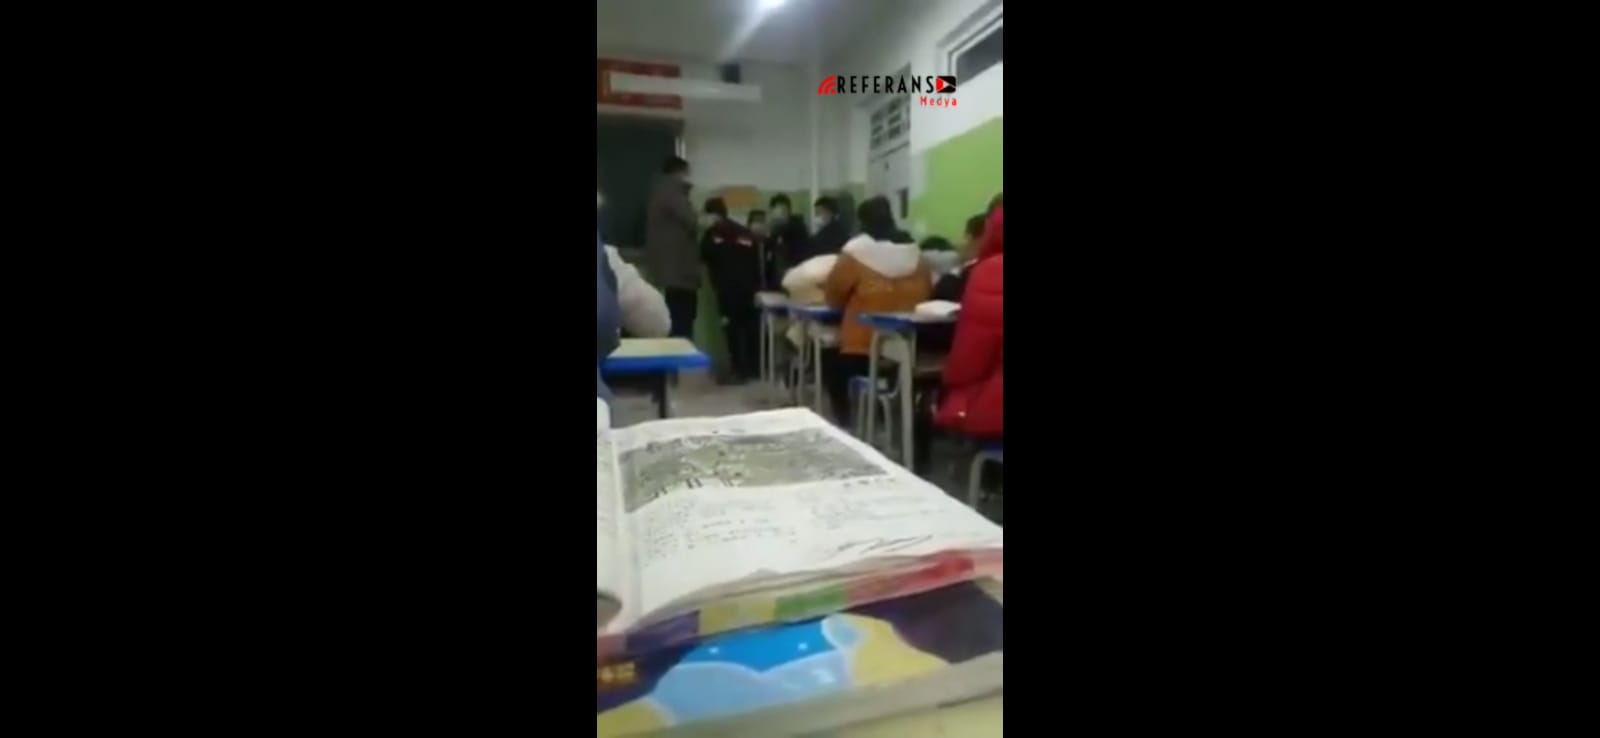 Çinli öğretmen Uygur öğrenciyi sınıfın ortasında acımasızca dövdü (Video Haber)